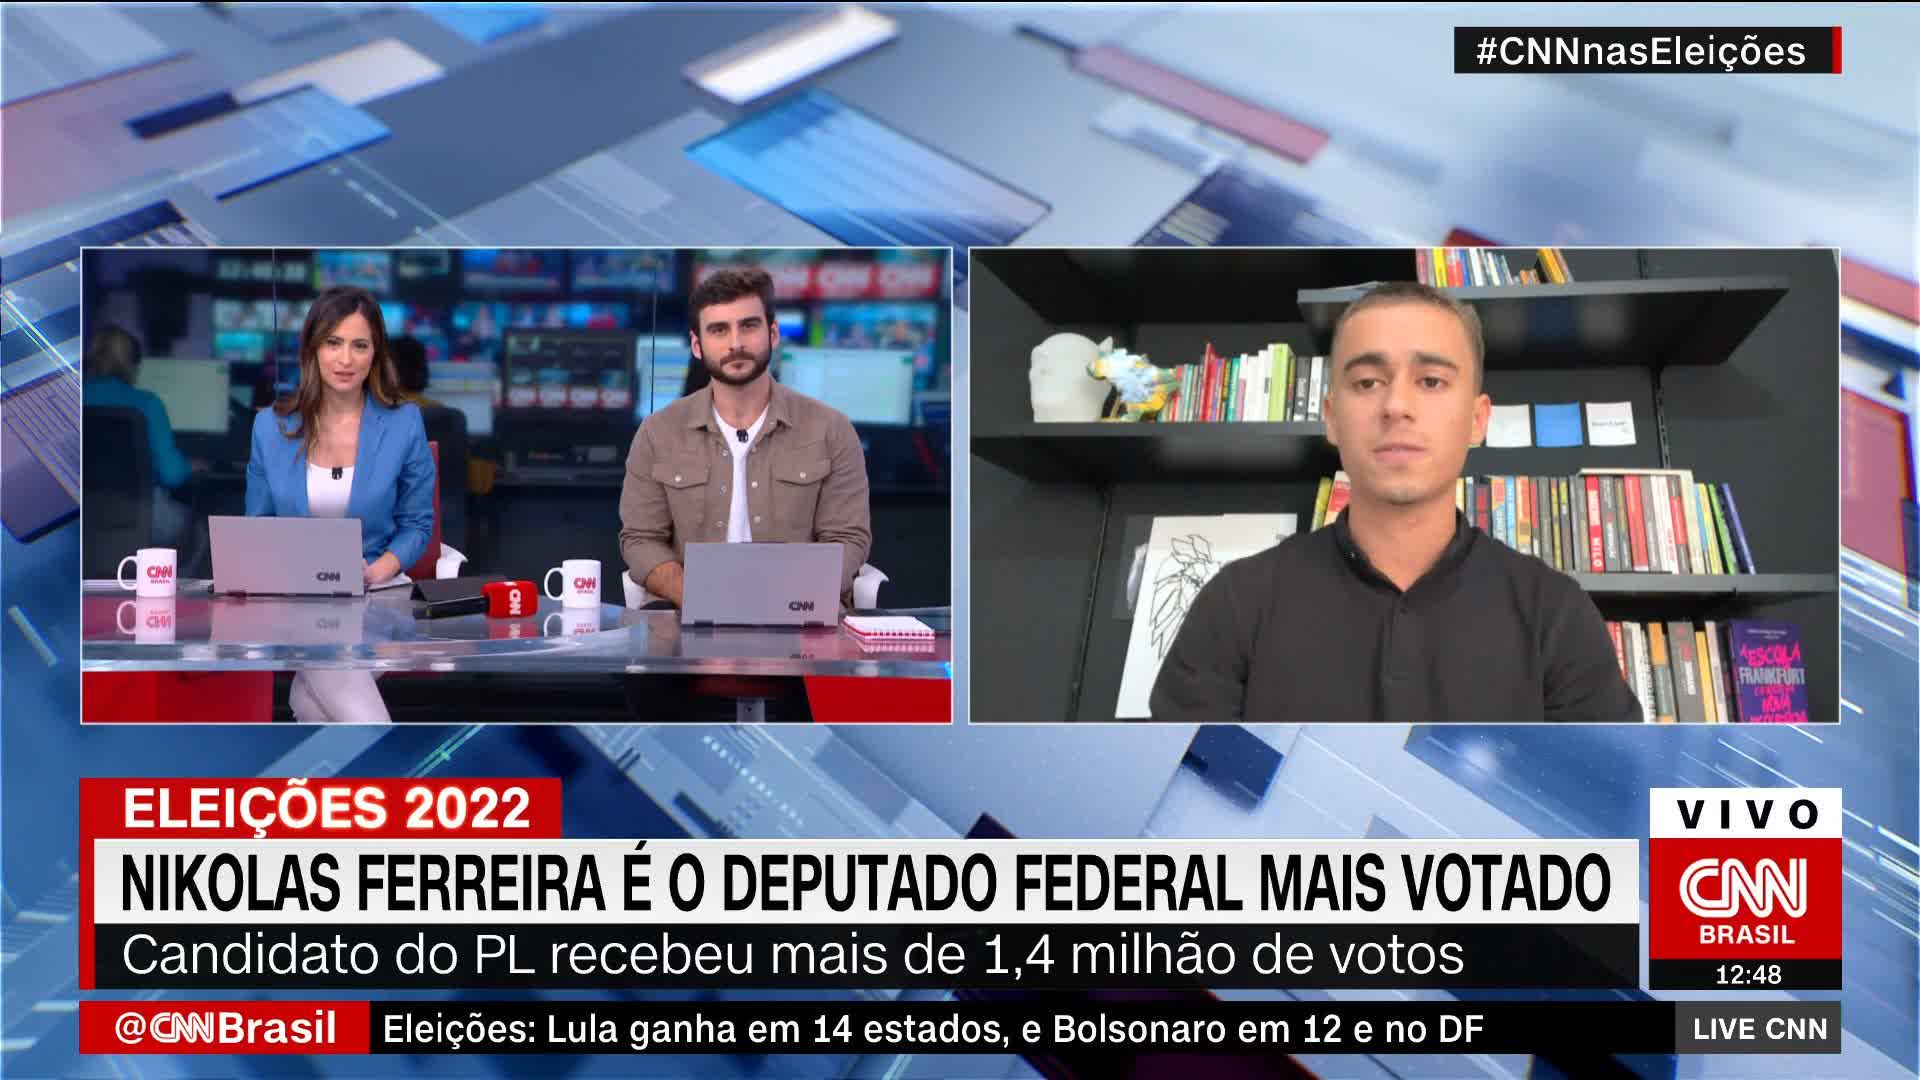 Nikolas Ferreira é o deputado federal mais votado do país